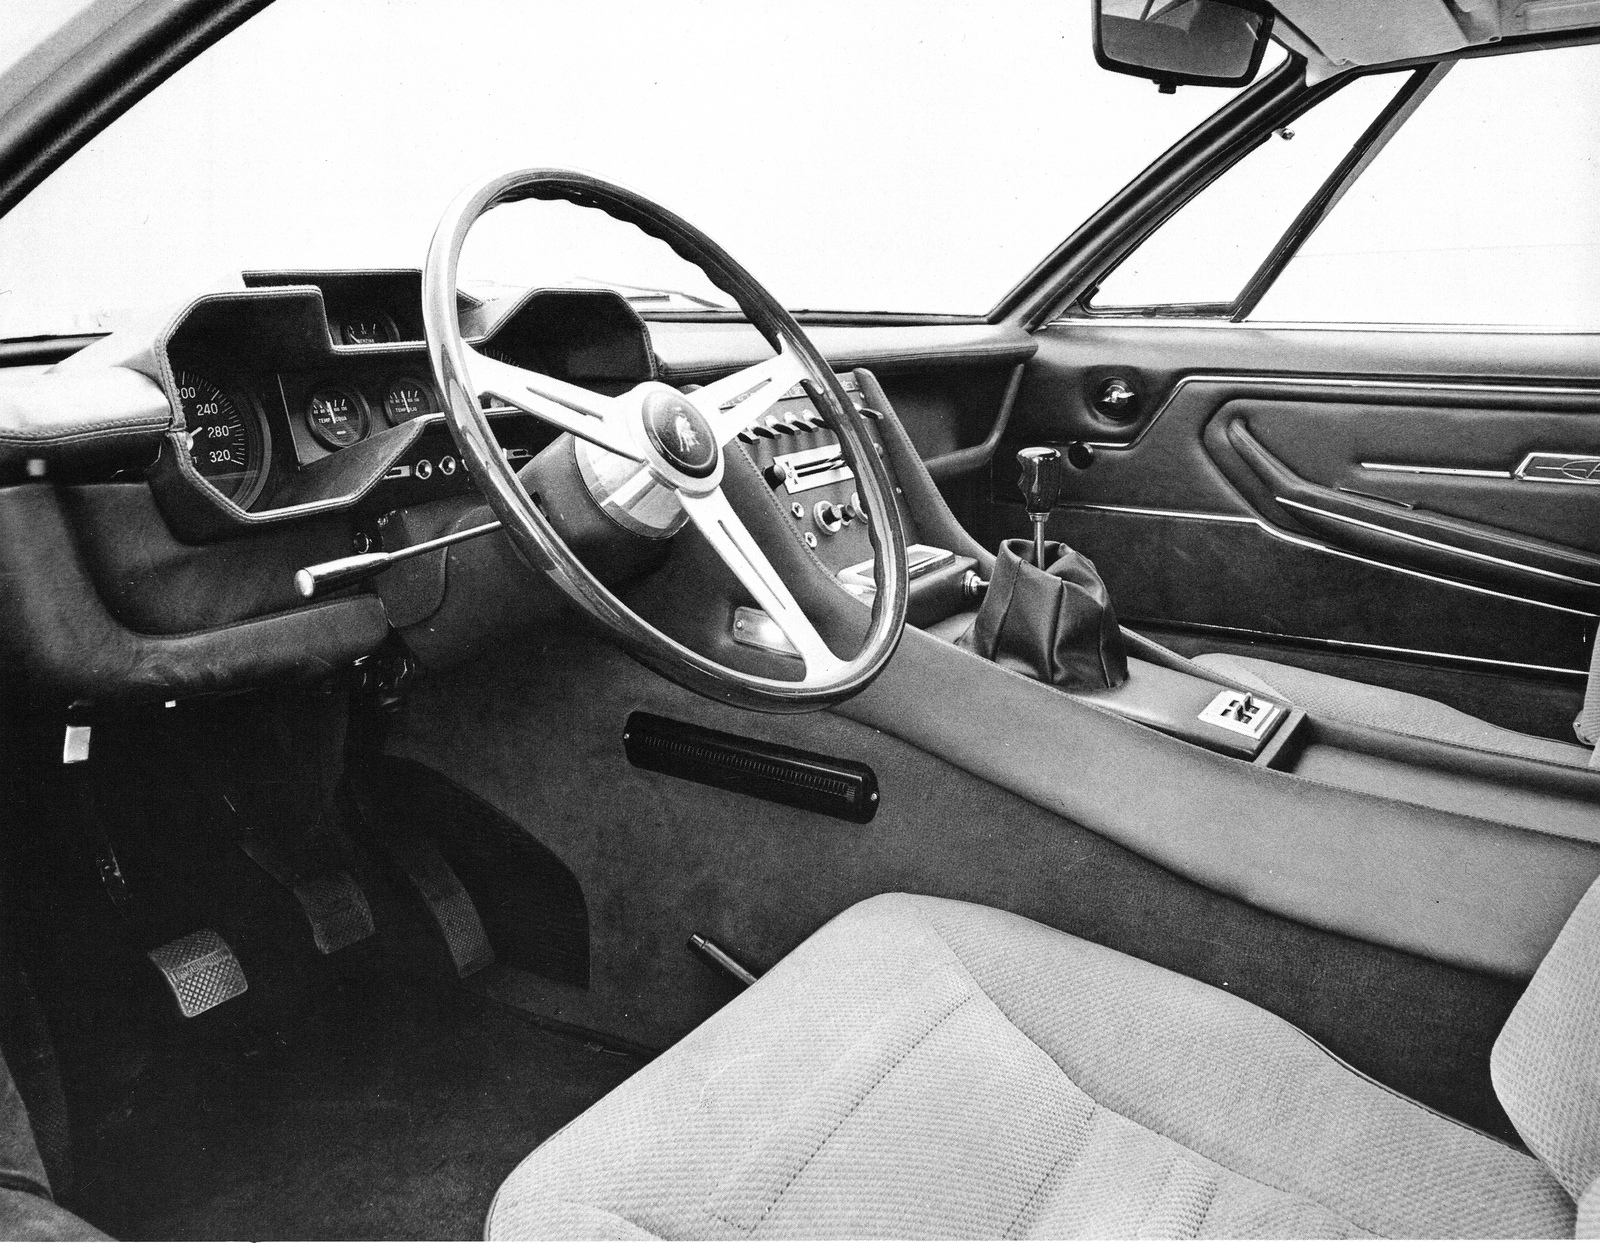 Lamborghini Espada Series I (Bertone), 1968-69 - Interior